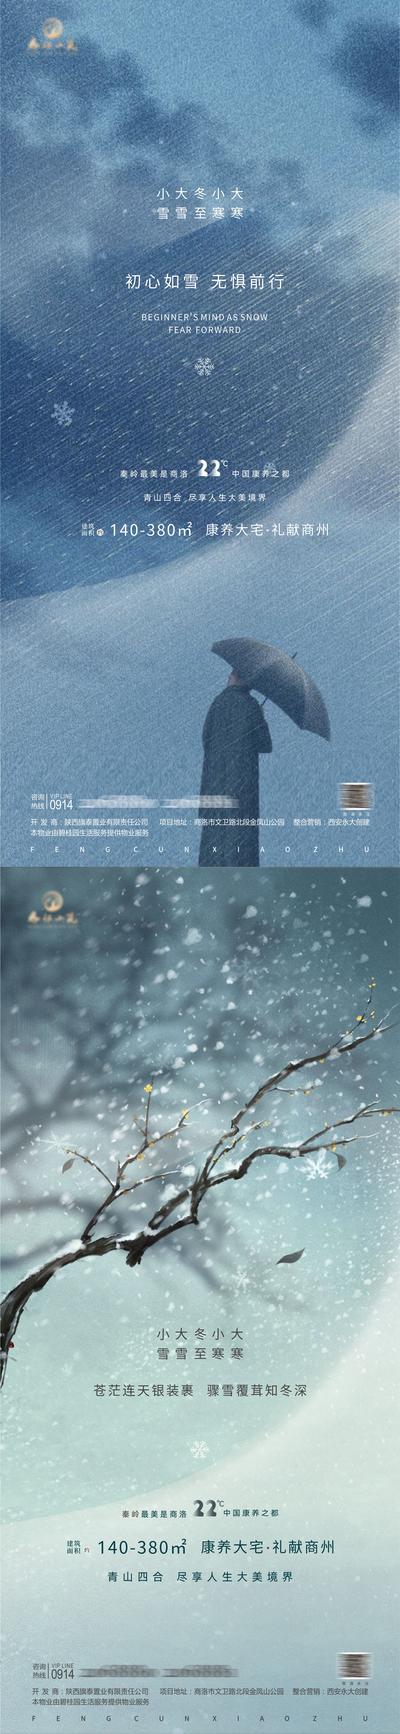 南门网 海报 房地产   小雪  大雪  冬至  小寒  大寒  二十四节气 雨伞 树枝